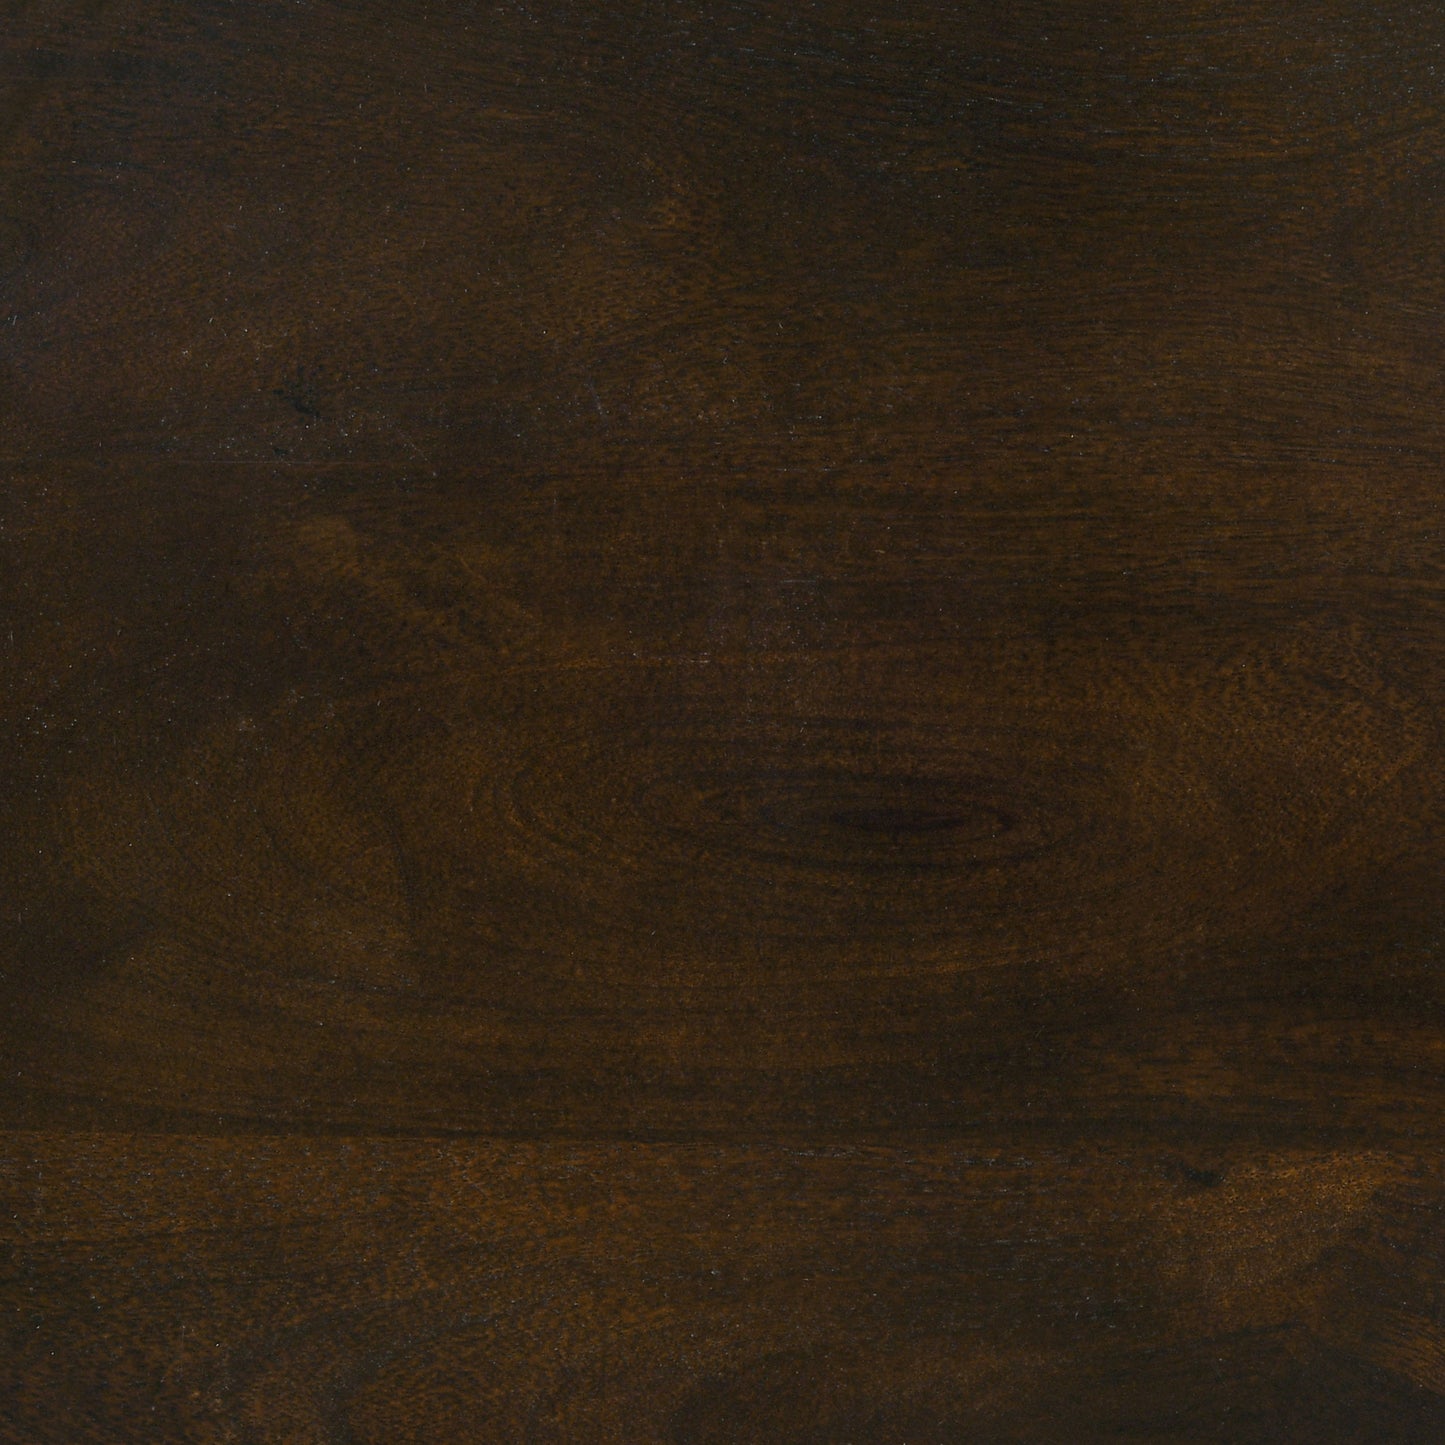 Krish 24-inch Round Accent Table Dark Brown